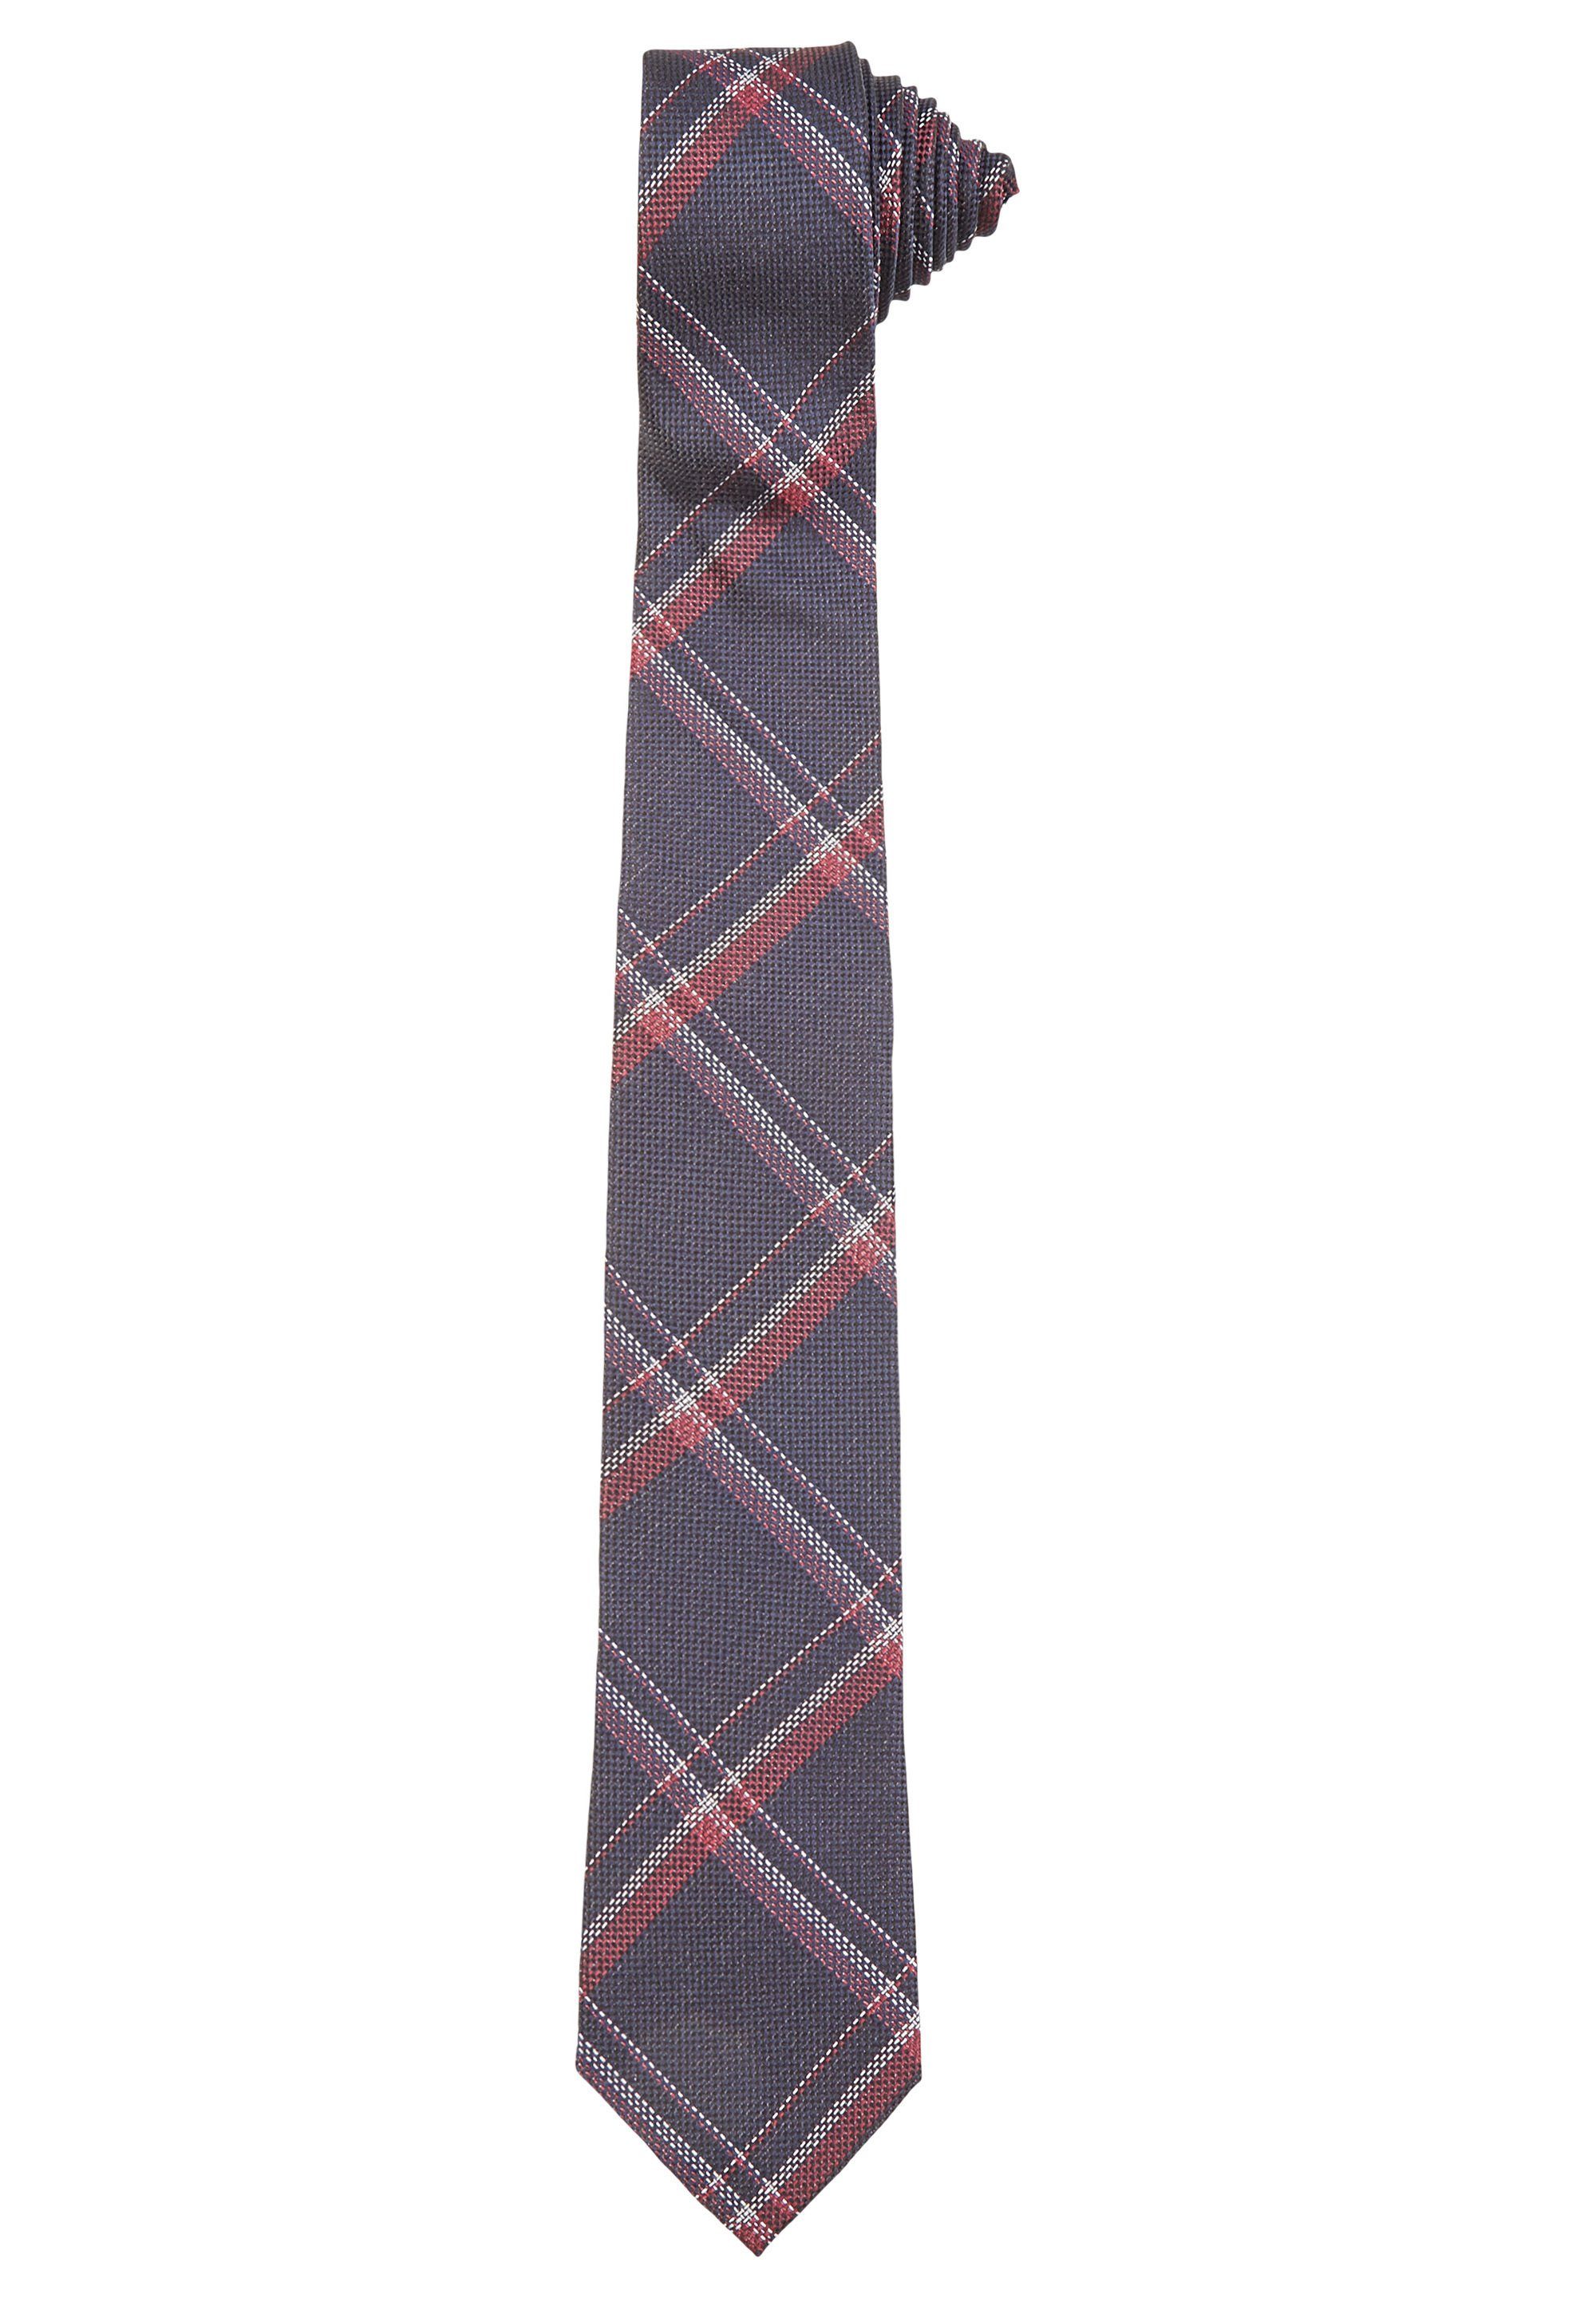 HECHTER PARIS Krawatte aus feinster Seide red